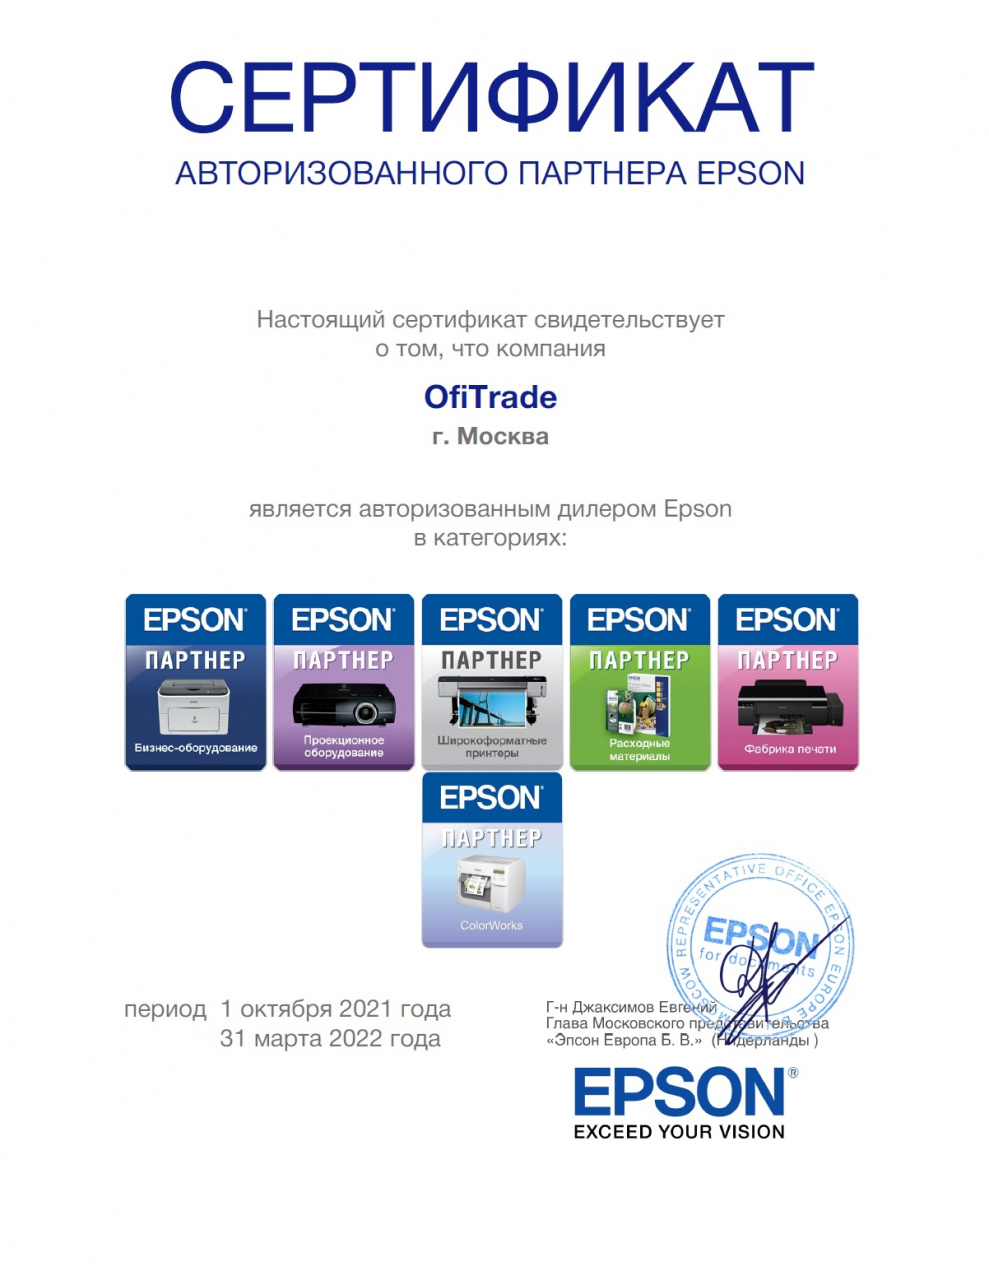 Сертификат Epson (31.03.2022)